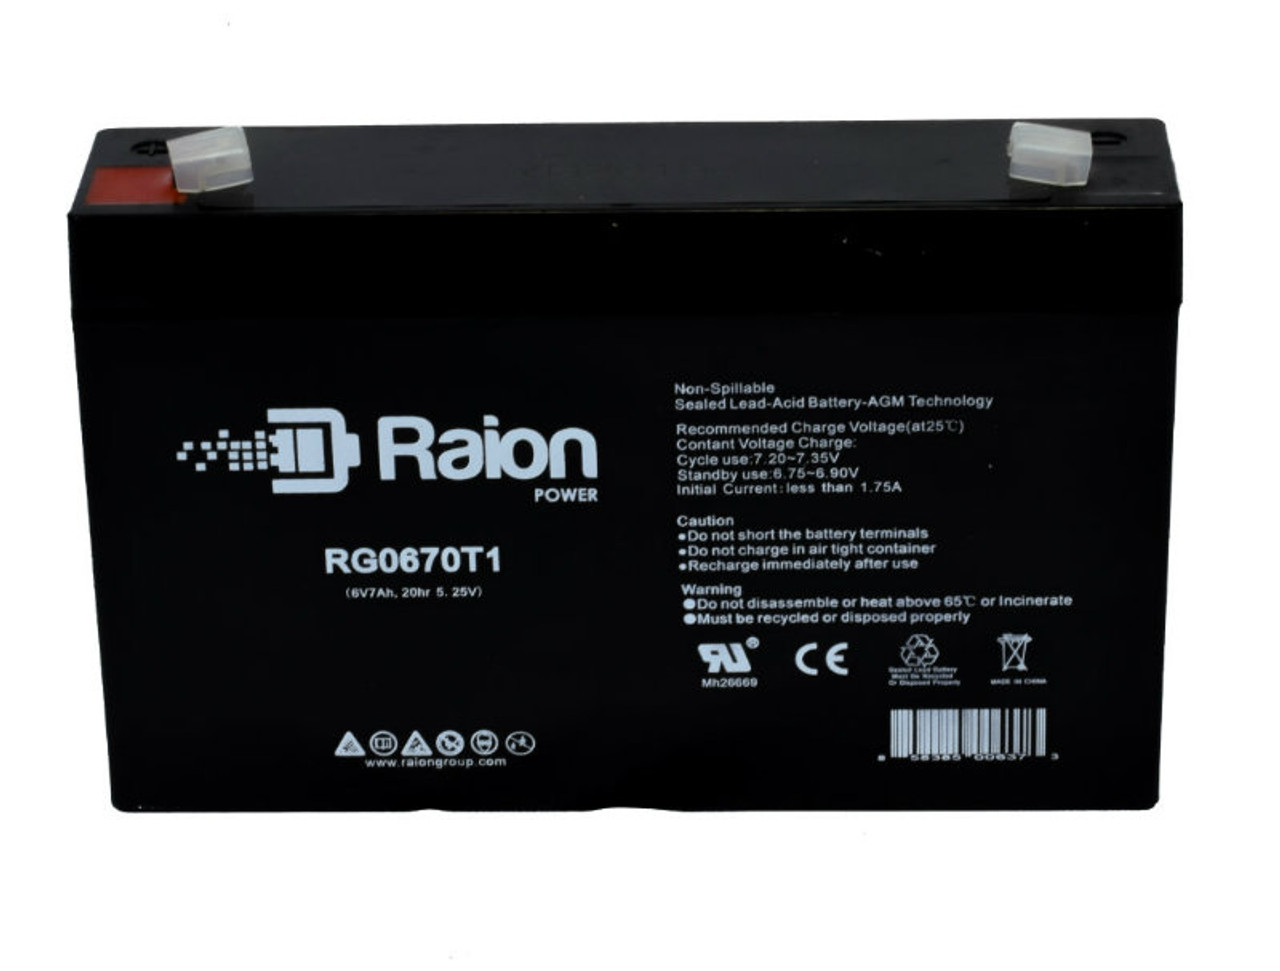 Raion Power RG0670T1 SLA Battery for Sentry PM670 OEM Battery